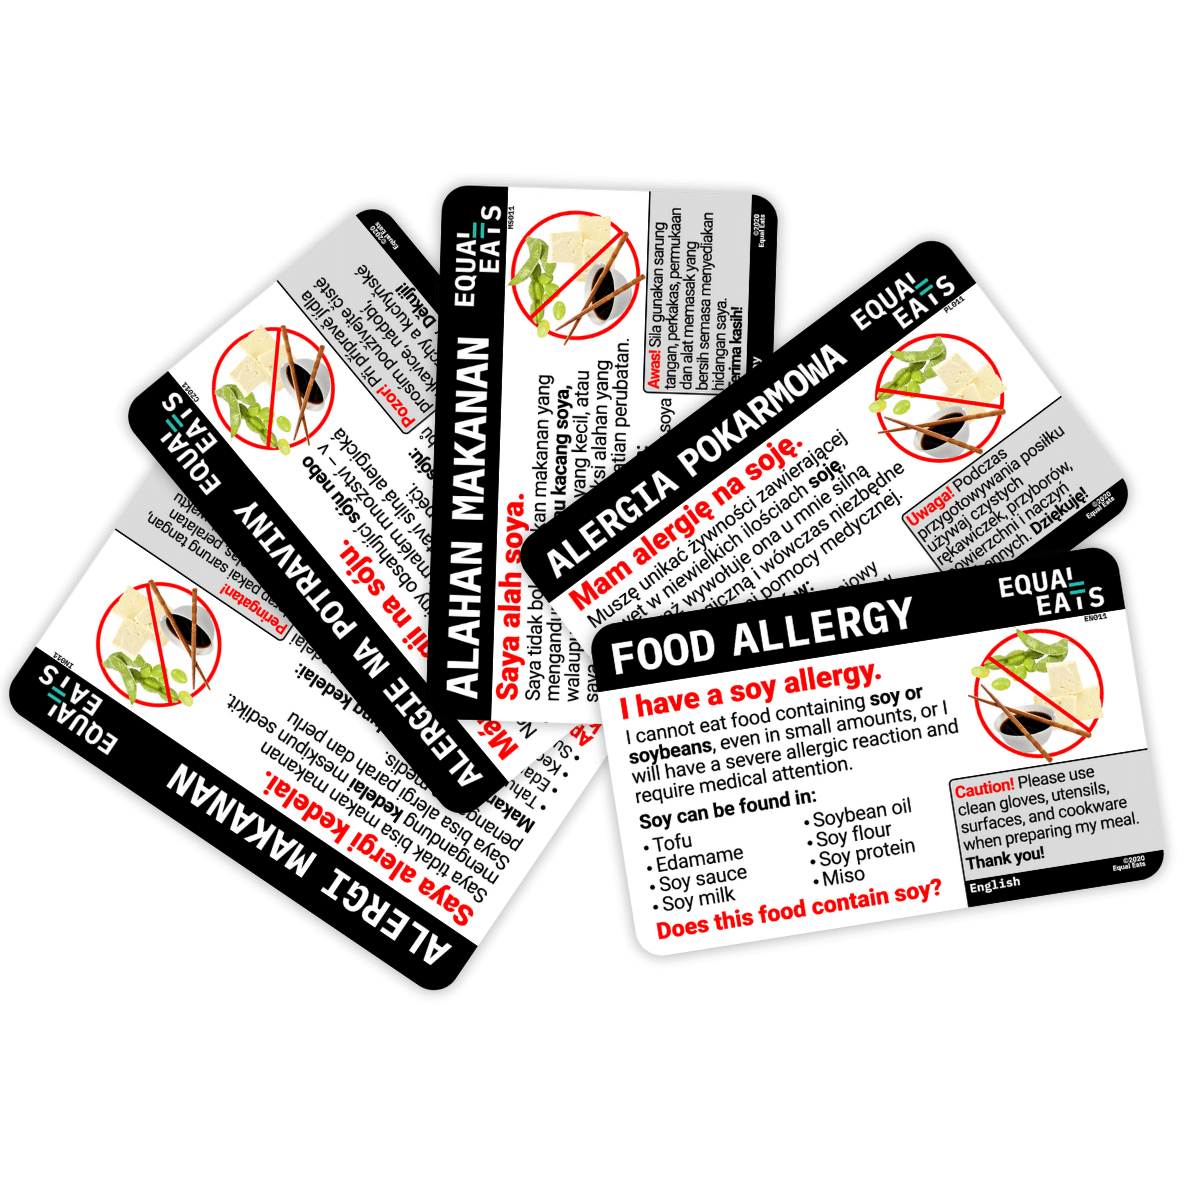 Soy Allergy Translation Cards - Equal Eats